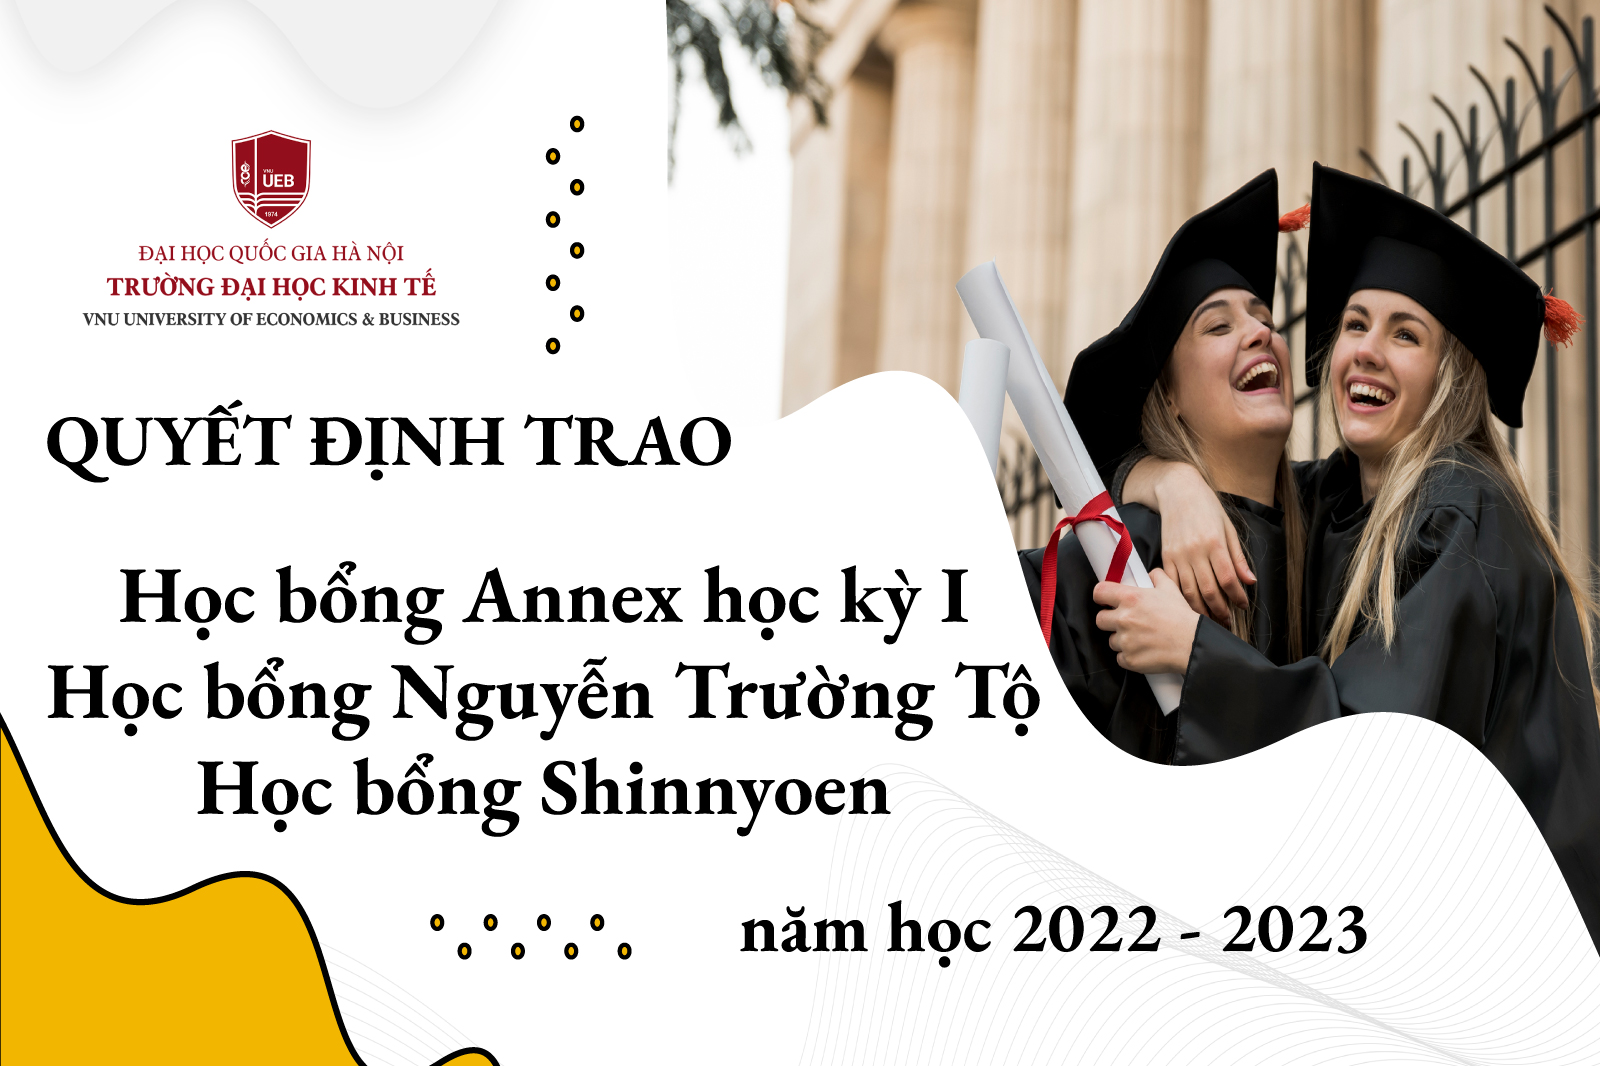 Thông báo sinh viên nhận được học bổng Annex học kỳ I, học bổng Nguyễn Trường Tộ và học bổng của tổ chức Shinnyoen năm học 2022 - 2023